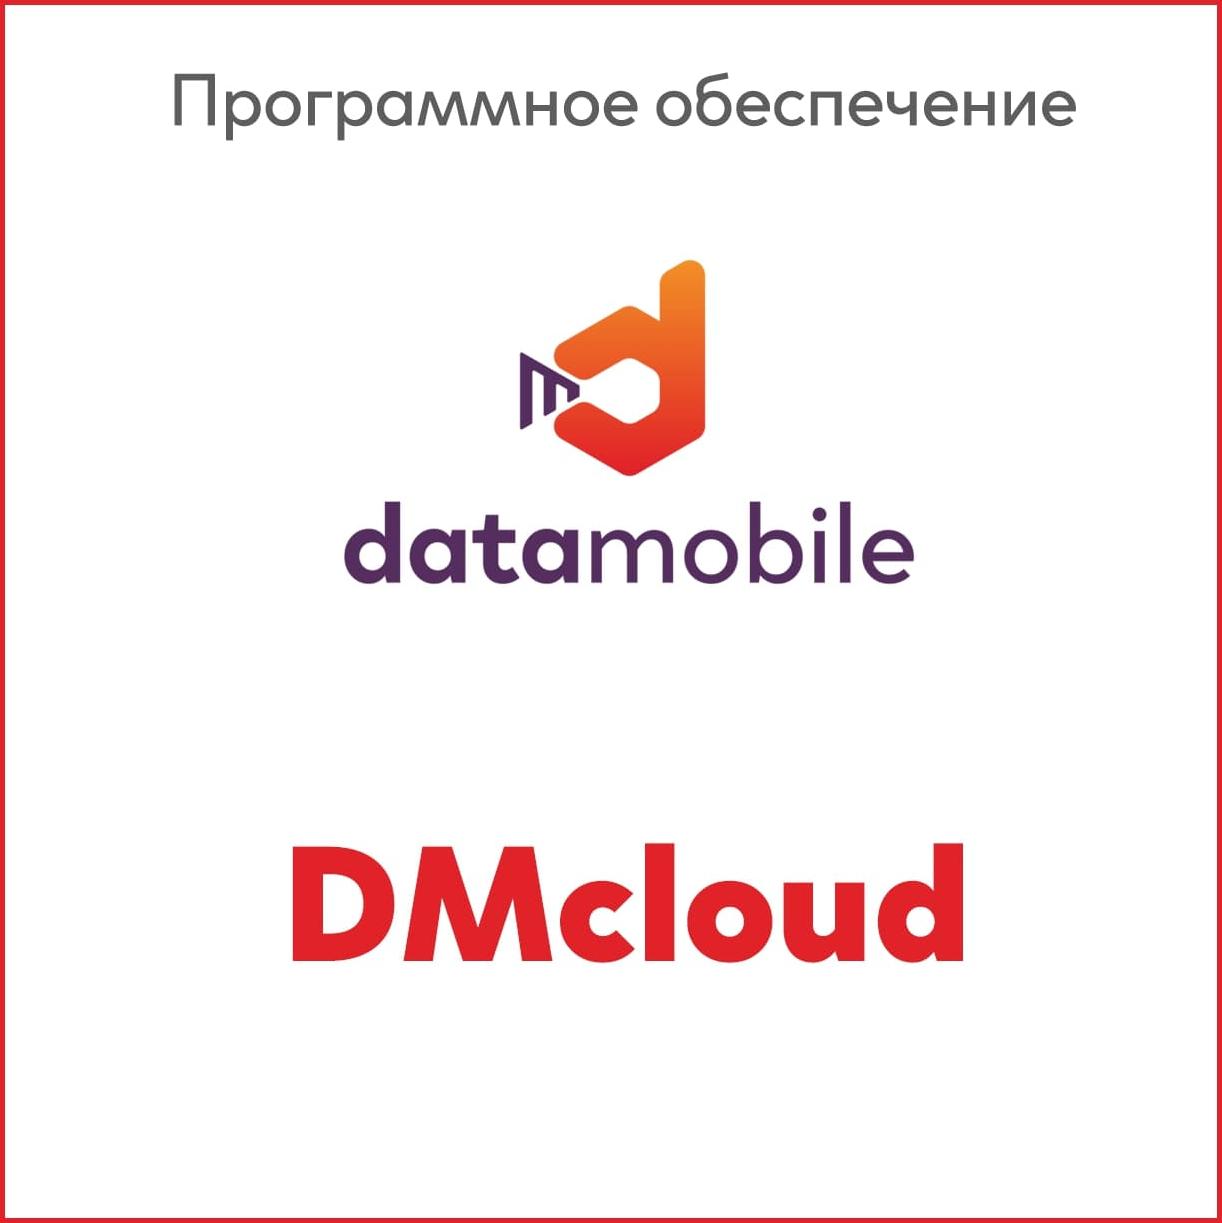 DMcloud: ПО DataMobile, модуль RFID для версий Стандарт Pro, Online -  подписка на 12 месяцев